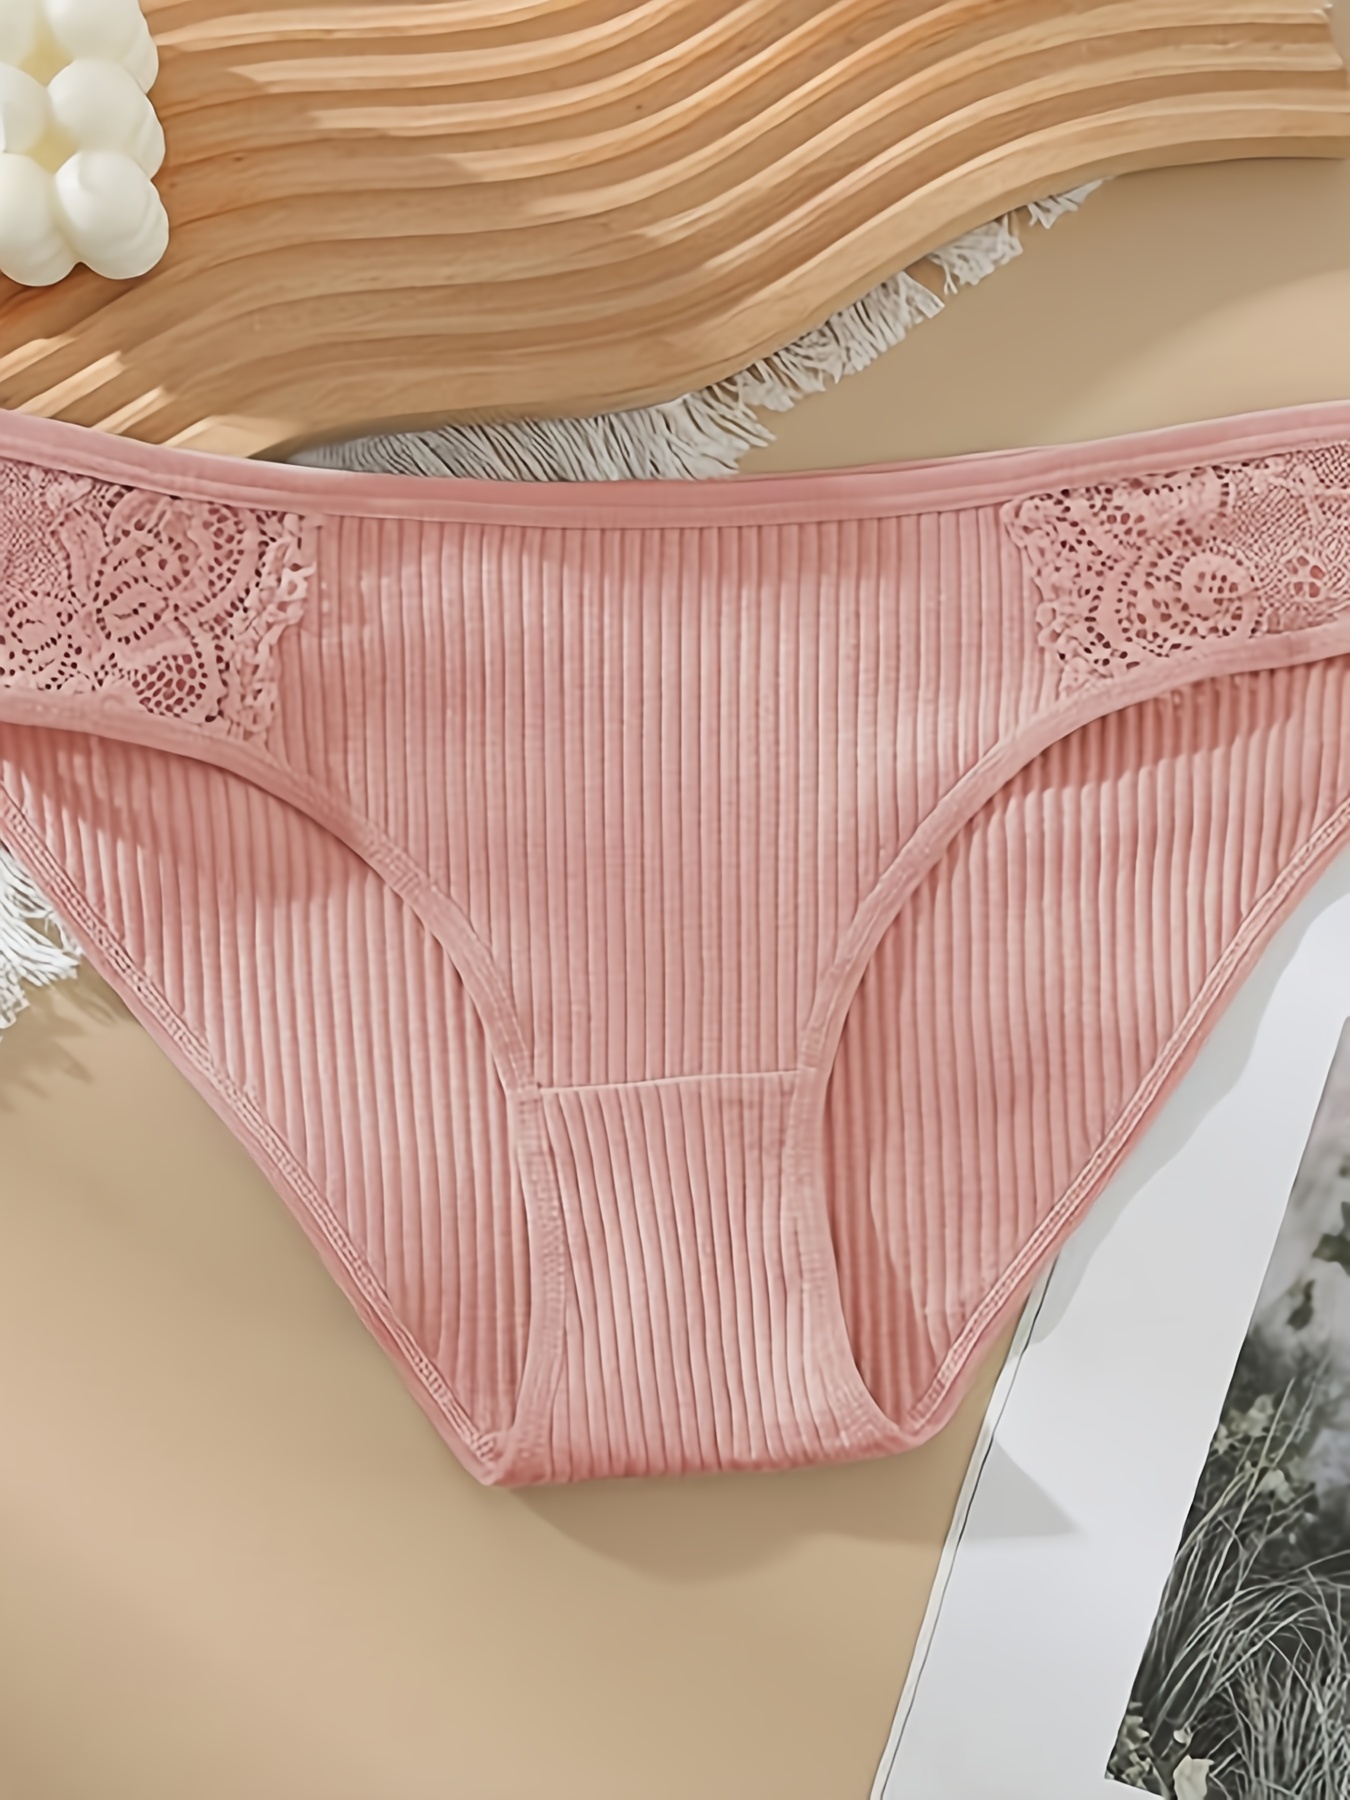 3Pcs Women's Underwear Panties Sexy Lace Thin Cotton Briefs Grils